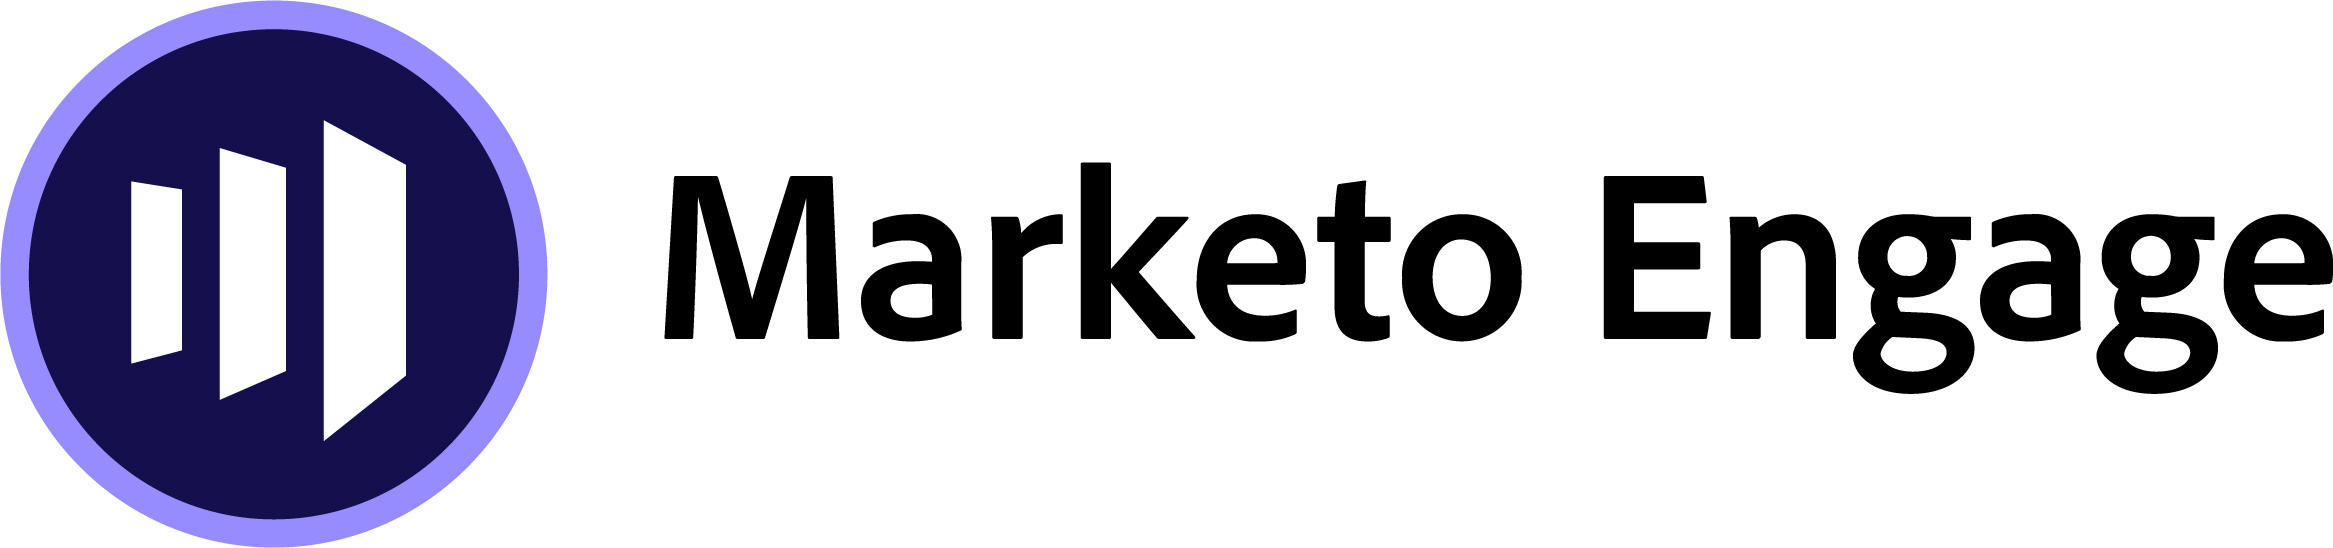 agence adobe marketo engage crm automatisation marketing B2B account based abm